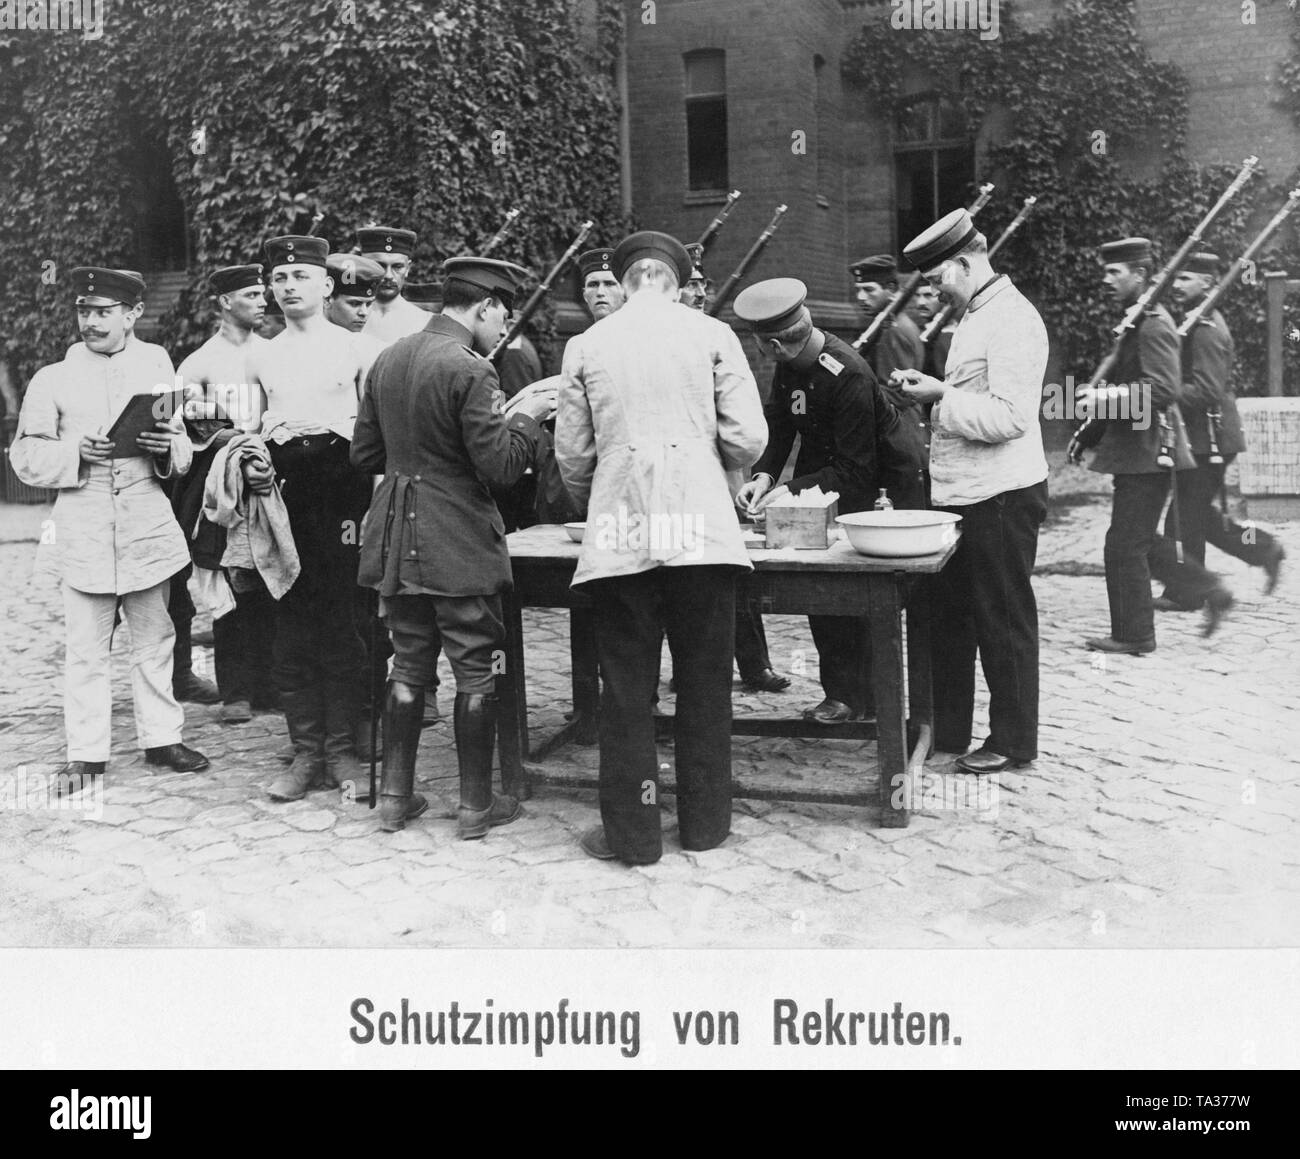 Die Impfung der Rekruten der Kaiserlichen Armee während des Ersten Weltkriegs, vermutlich in einer Kaserne in Berlin. Stockfoto